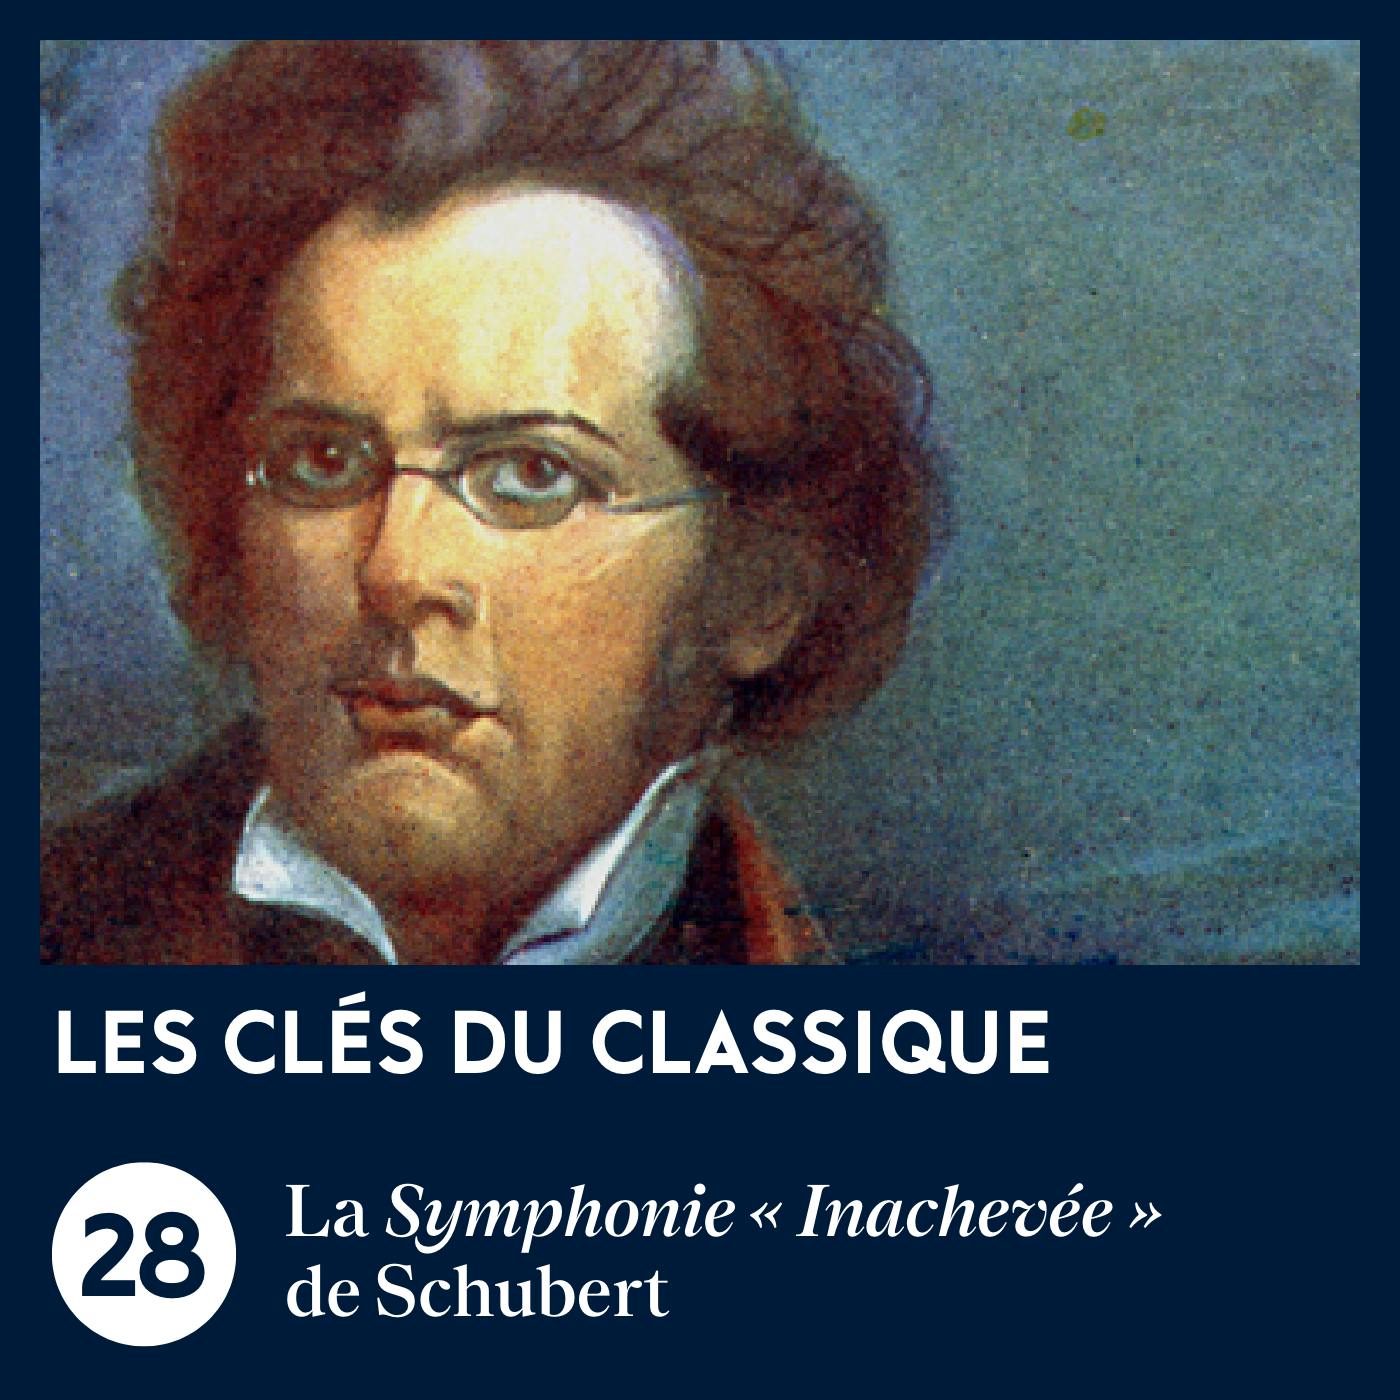 La Symphonie n° 8 « Inachevée » de Schubert | Les Clés du classique #28